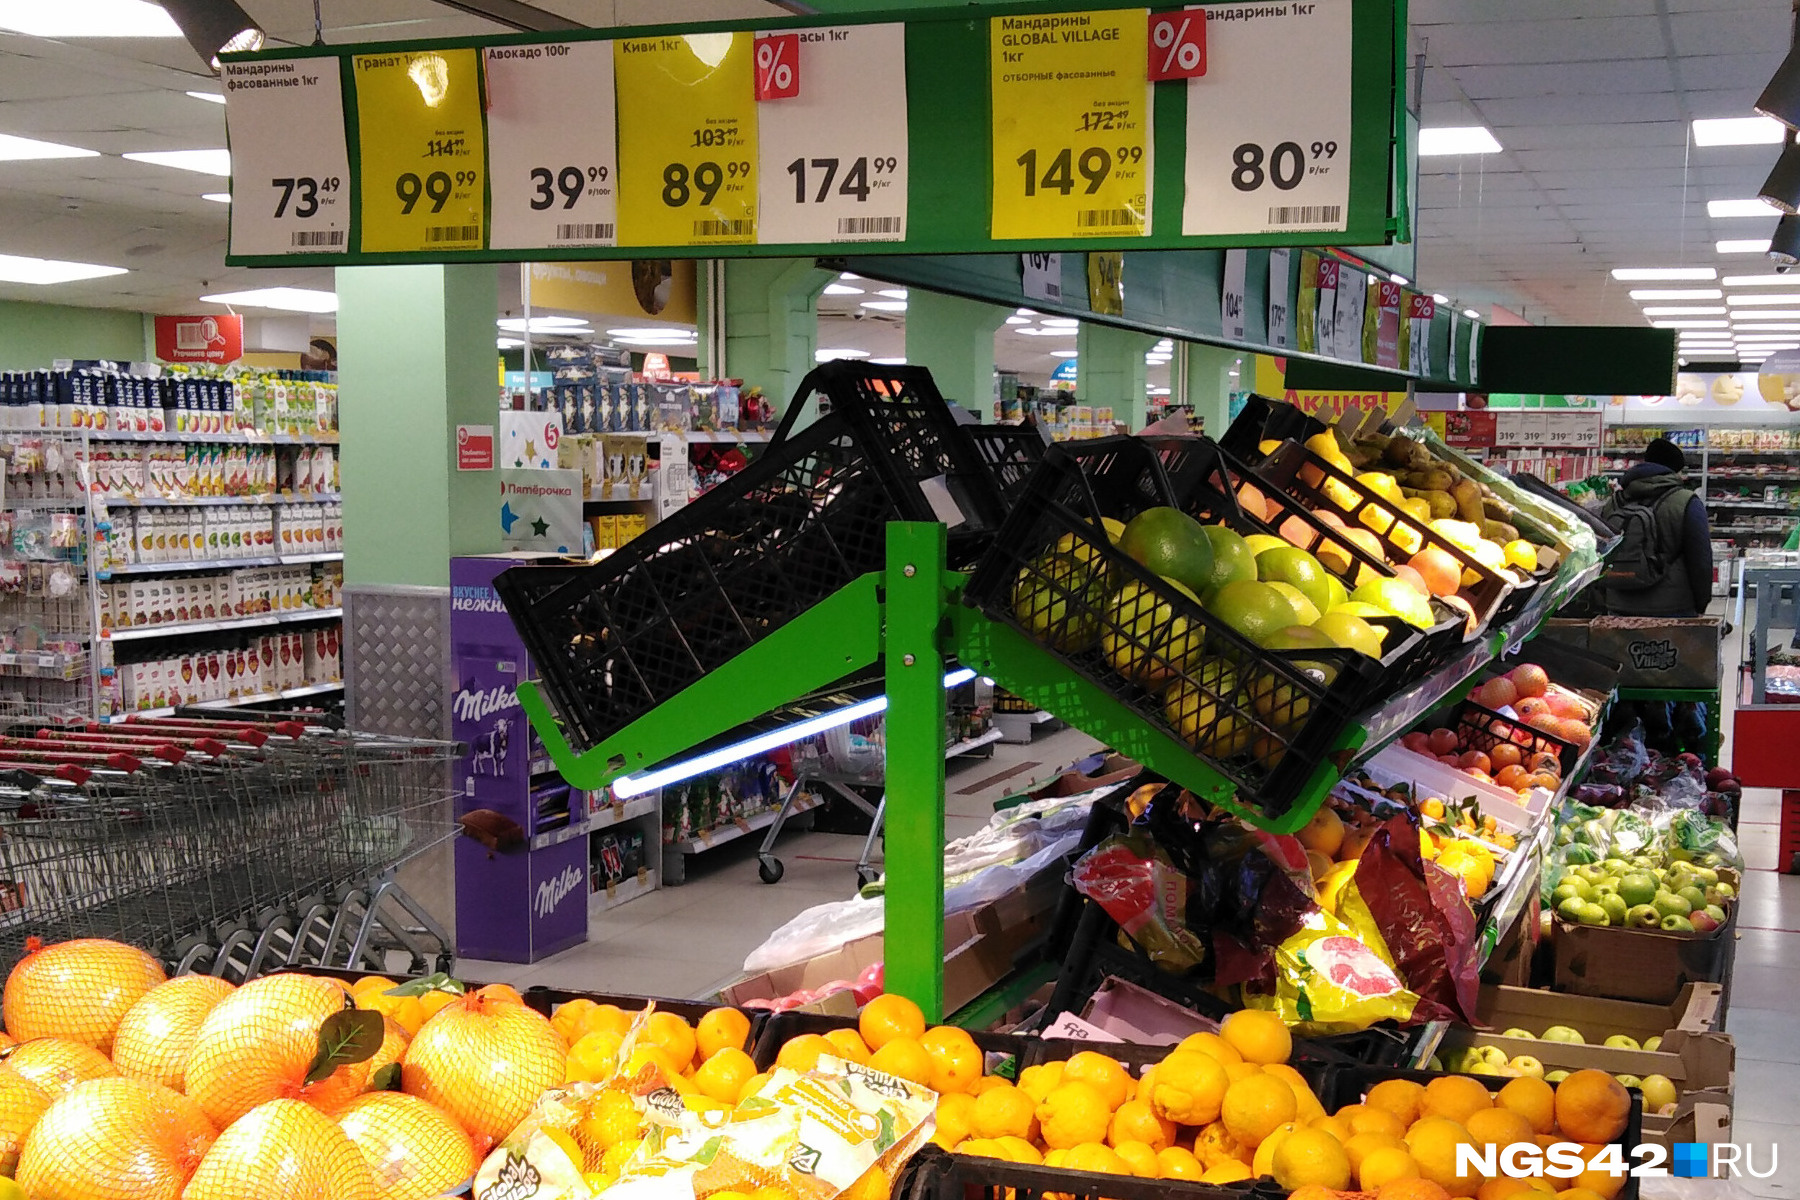 Выбор мандаринов тут гораздо богаче — покупателям предлагают сразу четыре вида, цена на которые начинается от 73,49 за обычные до 229,99 рубля за мини-версию фрукта